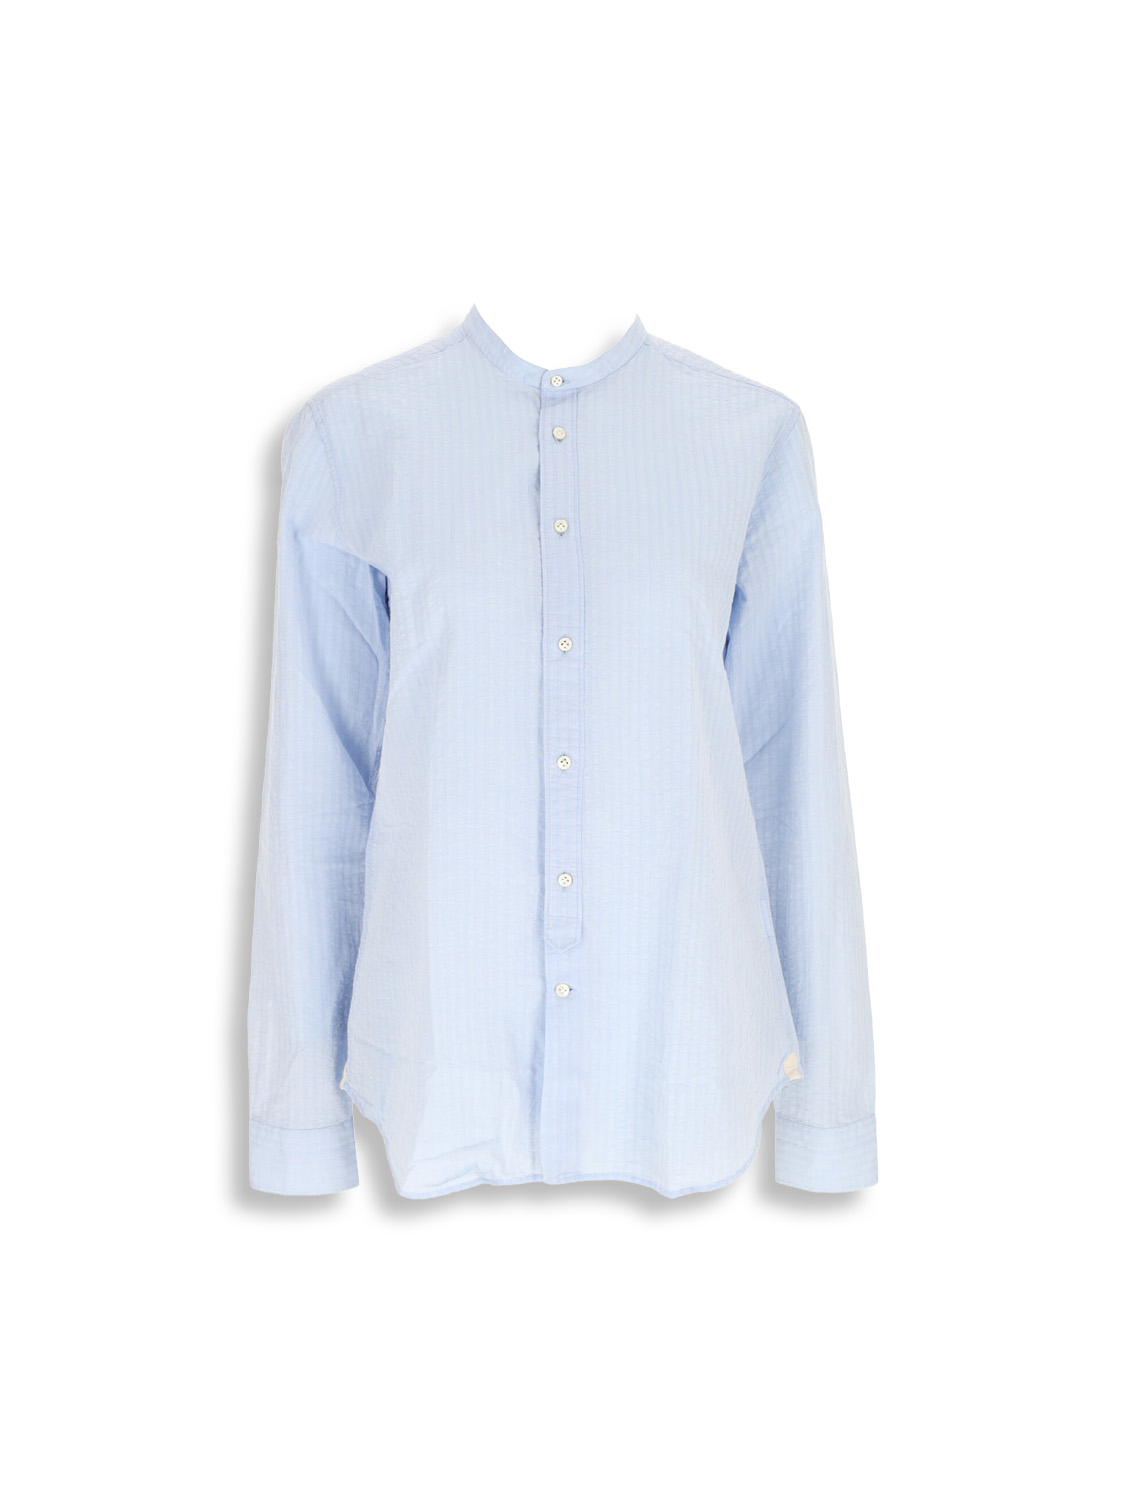 Long sleeve cotton linen blend shirt